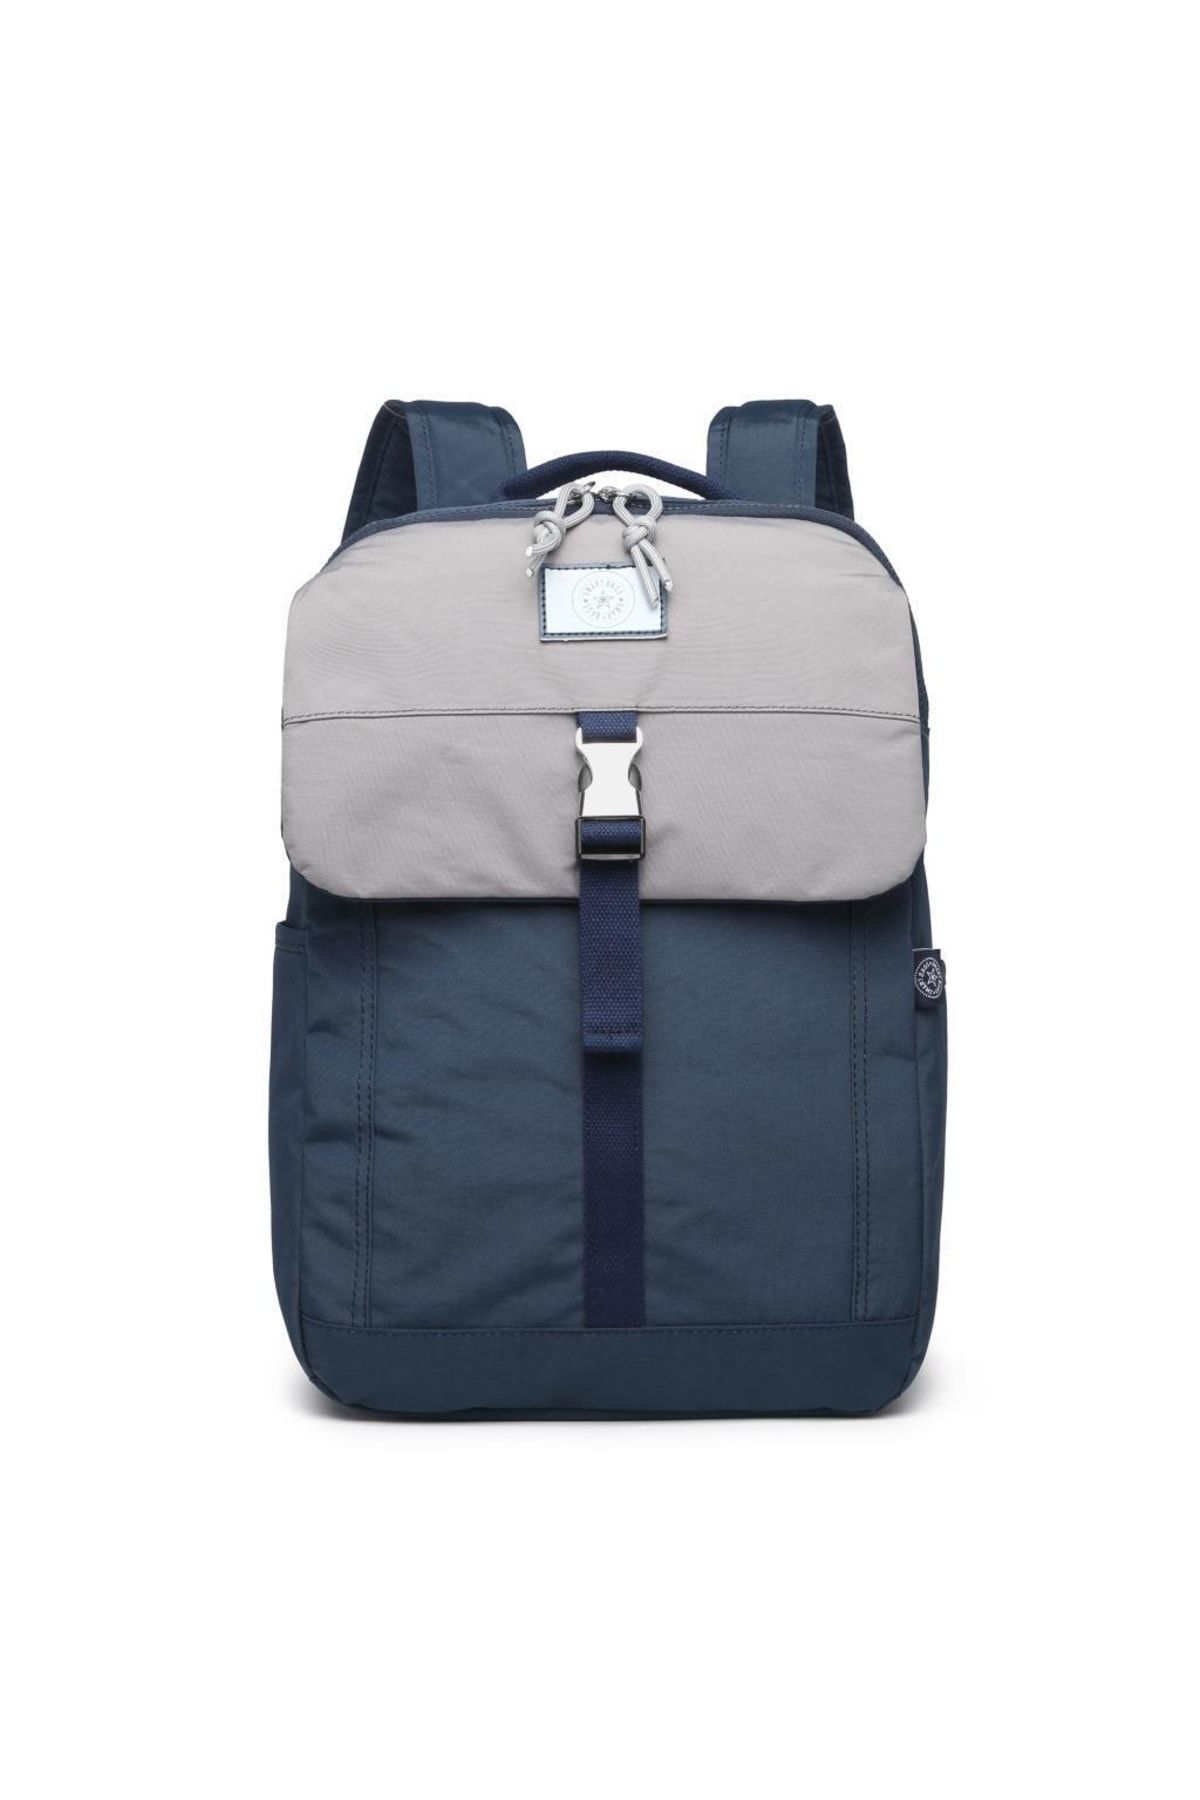 Smart Bags Uniseks Sırt Çantası Büyük Boy Renkli Tasarım 3183